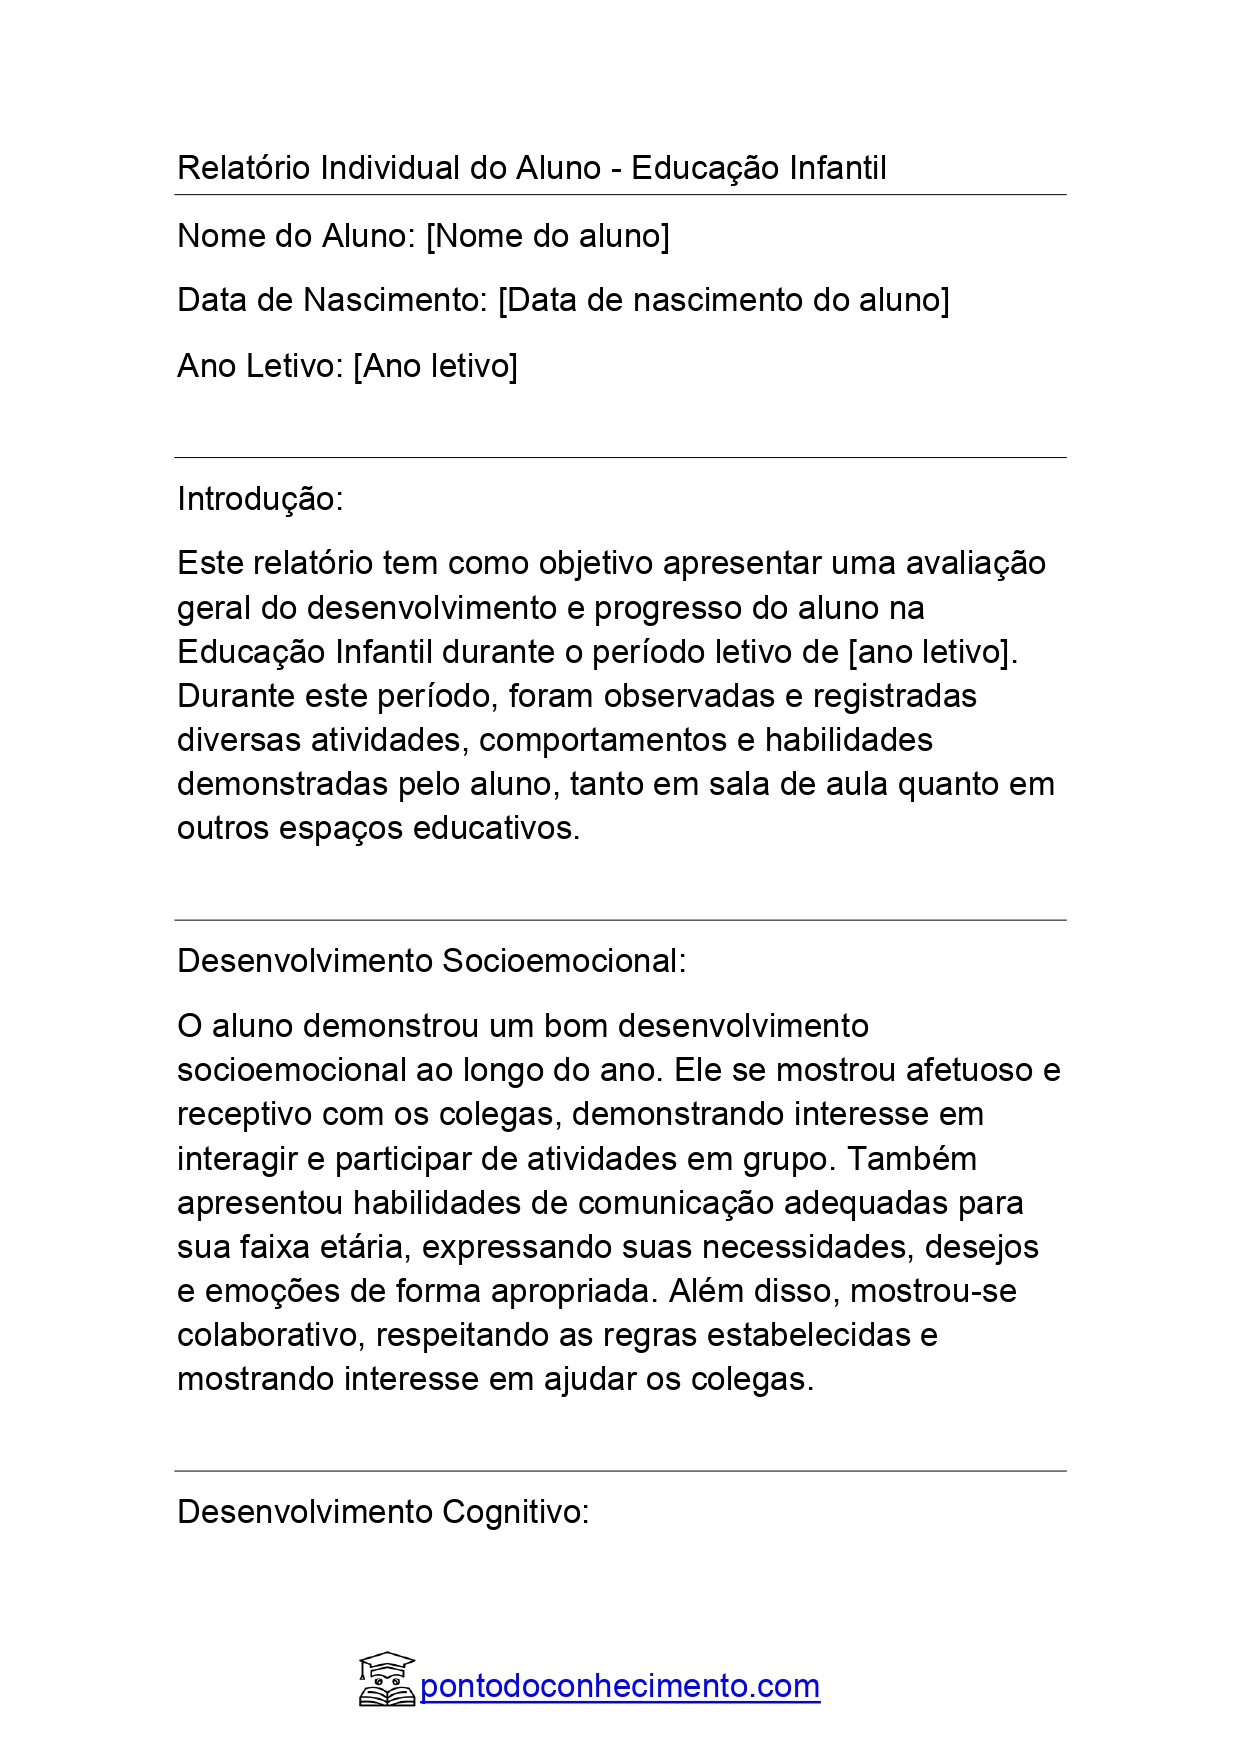 Relatório Individual do Aluno Educação Infantil: Relatório modelo 01